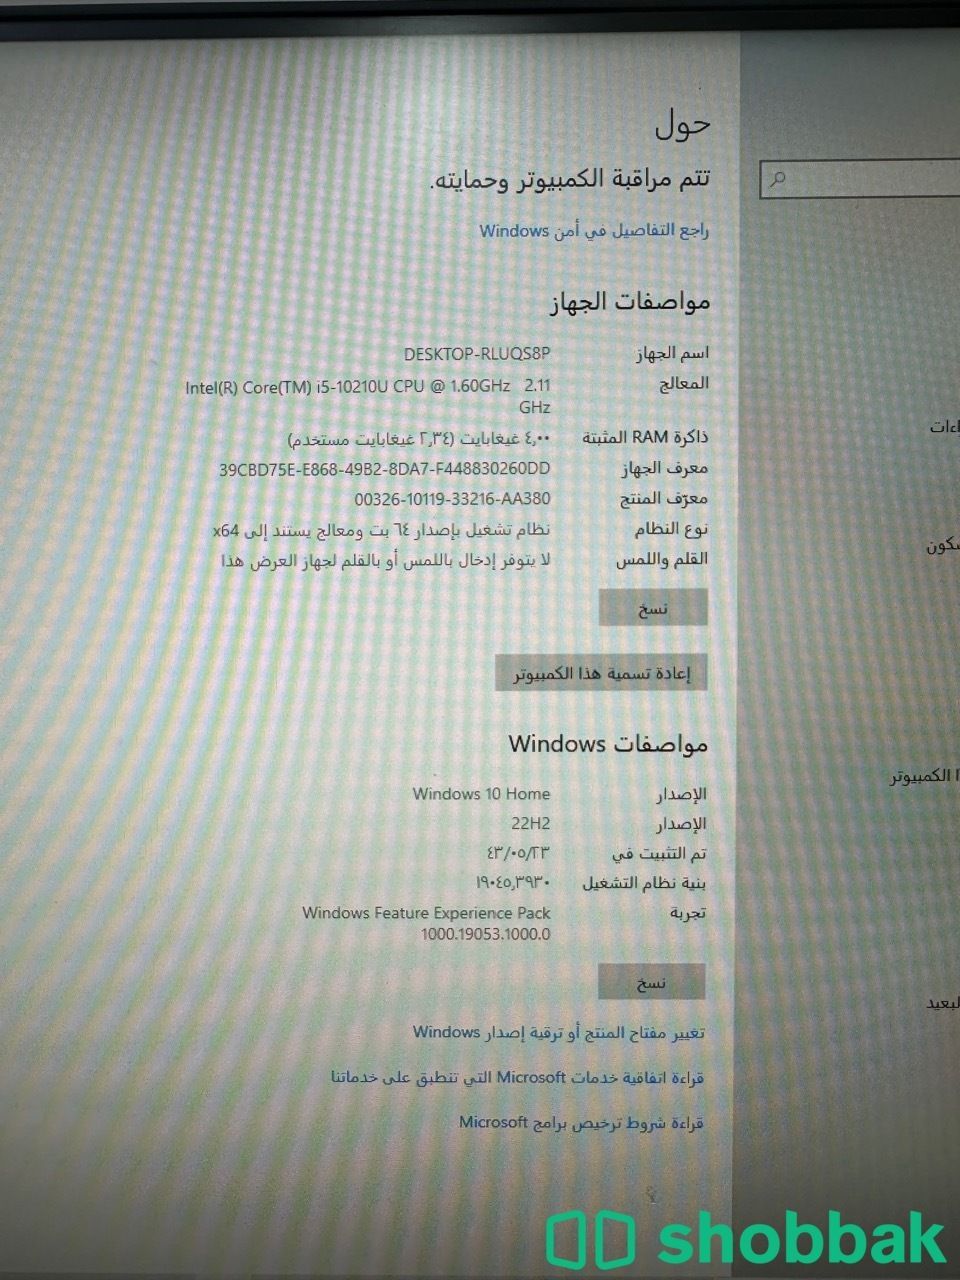 كمبيوتر شامل hp مع مكتب طلاب وكرسي  Shobbak Saudi Arabia